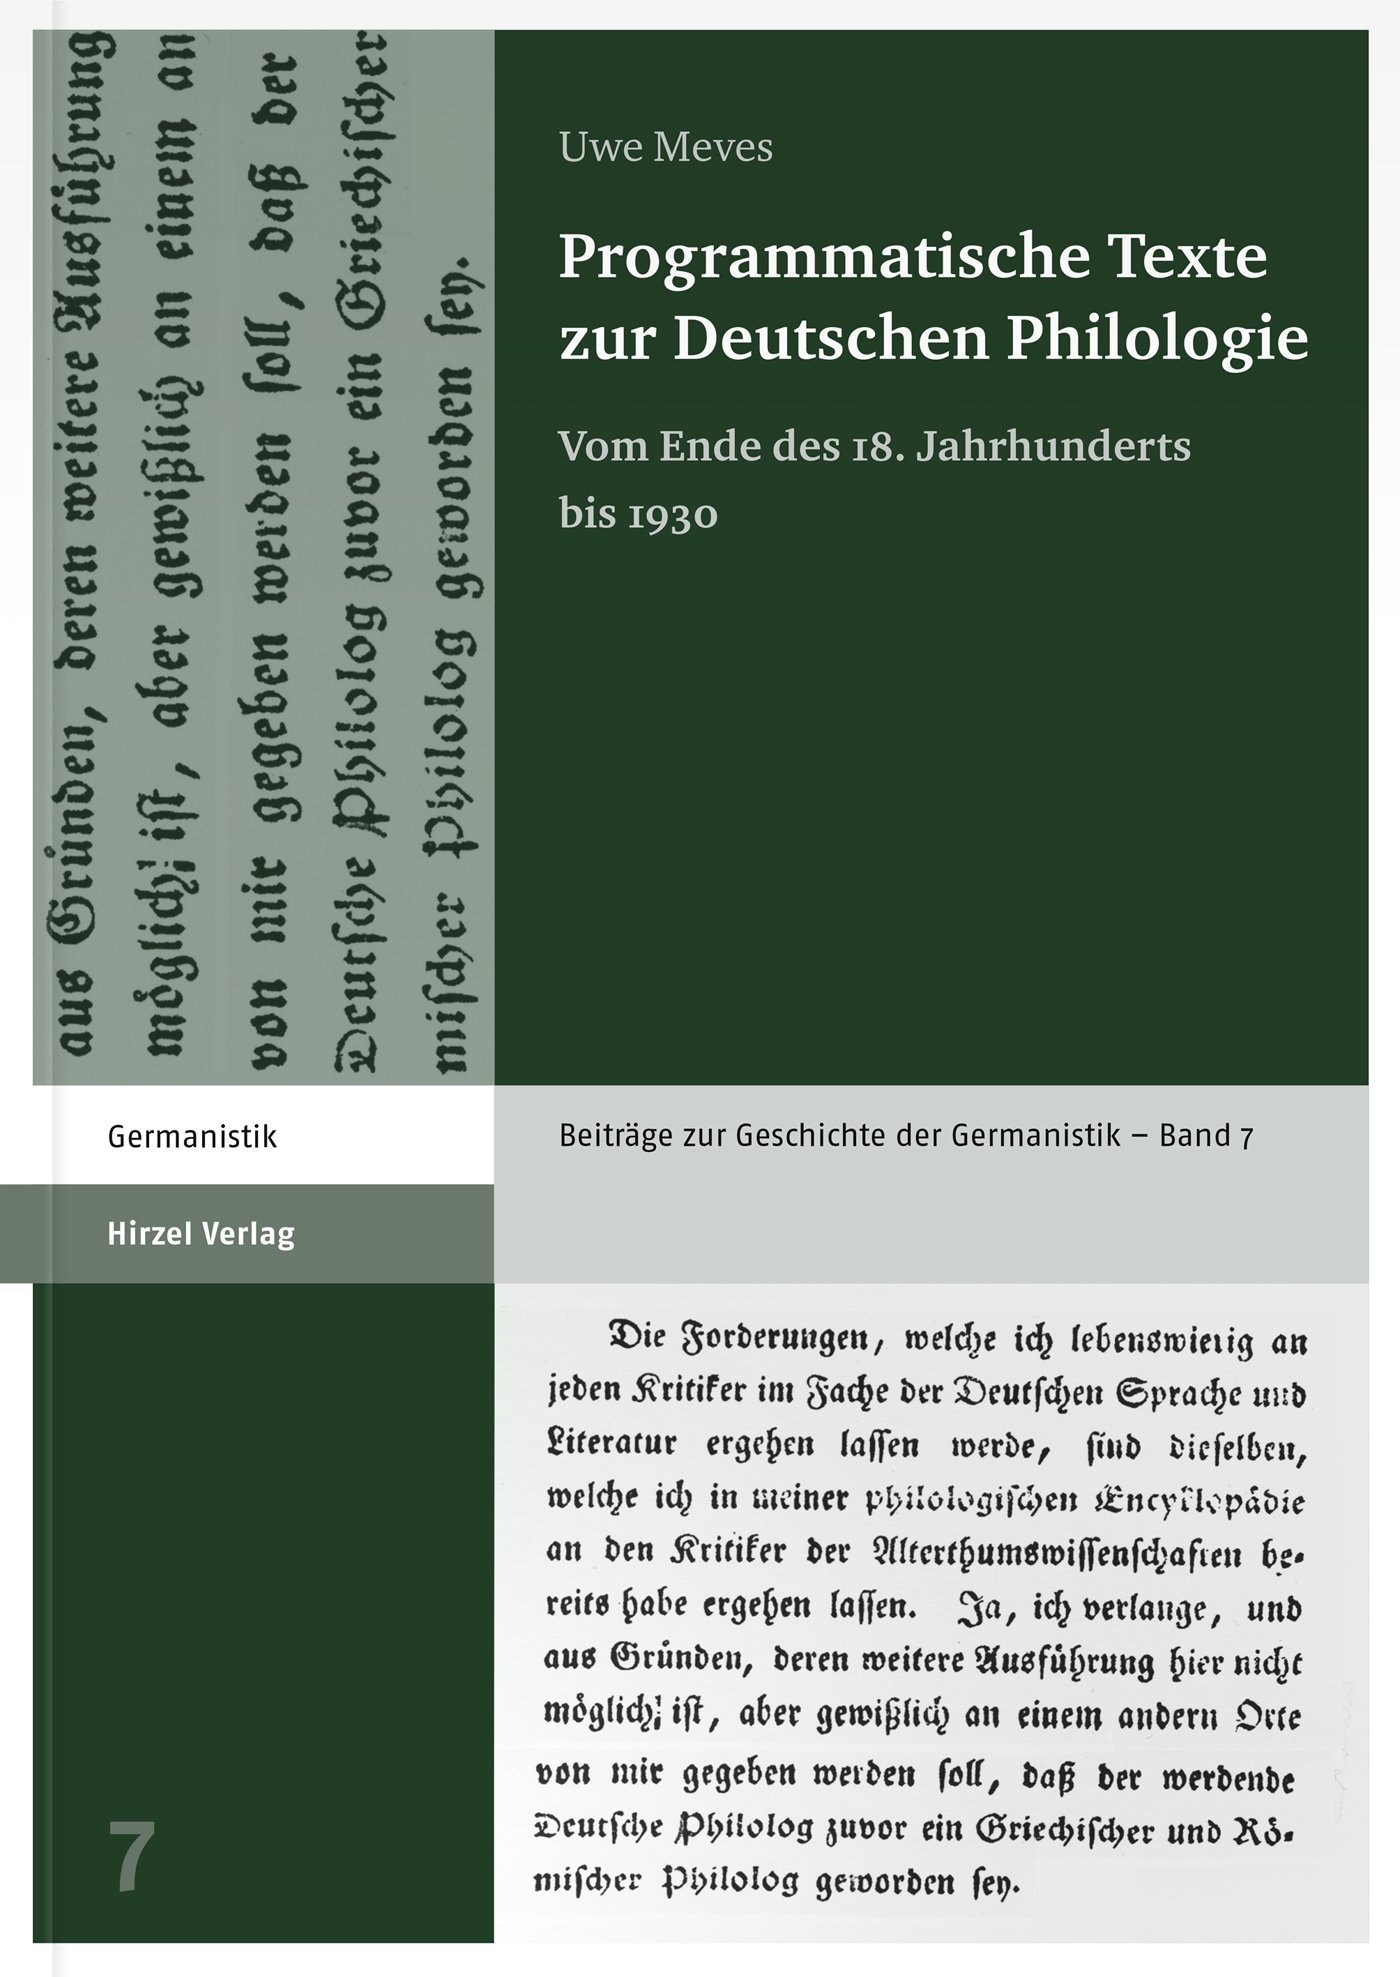 Programmatische Texte zur Deutschen Philologie